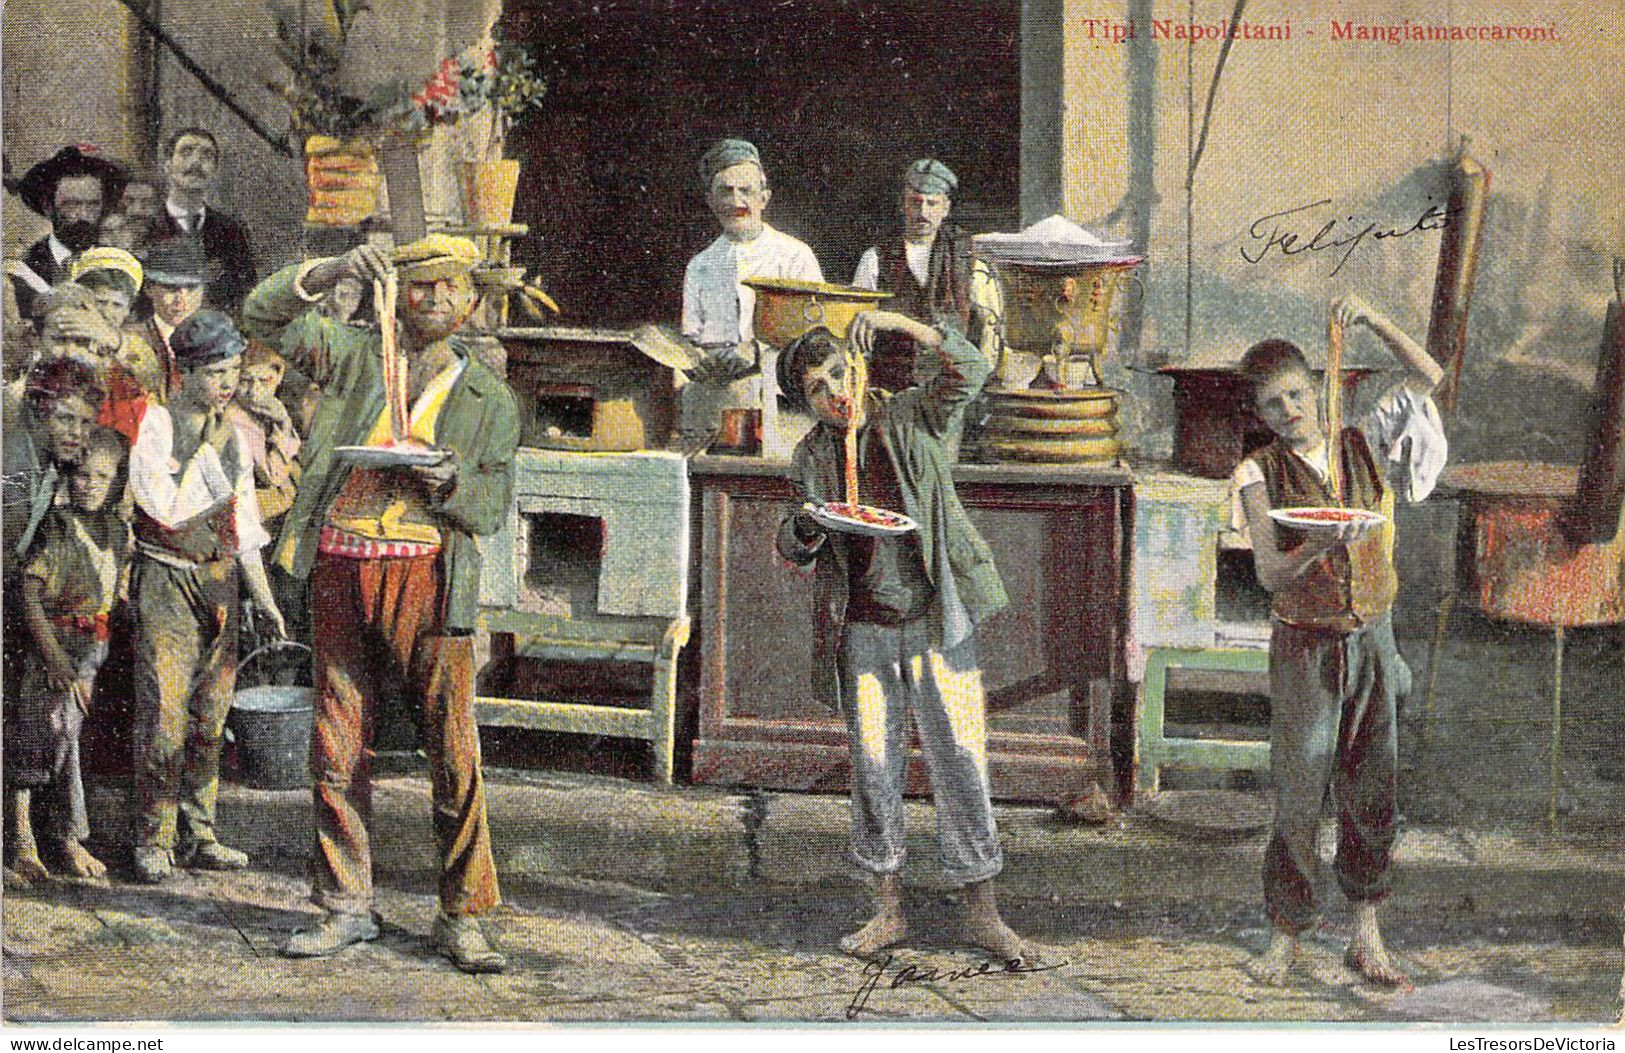 Italie - Tipi Napoletania - Mangiamaccaoni - Colorisé - Carte Postale Ancienne - Napoli (Napels)